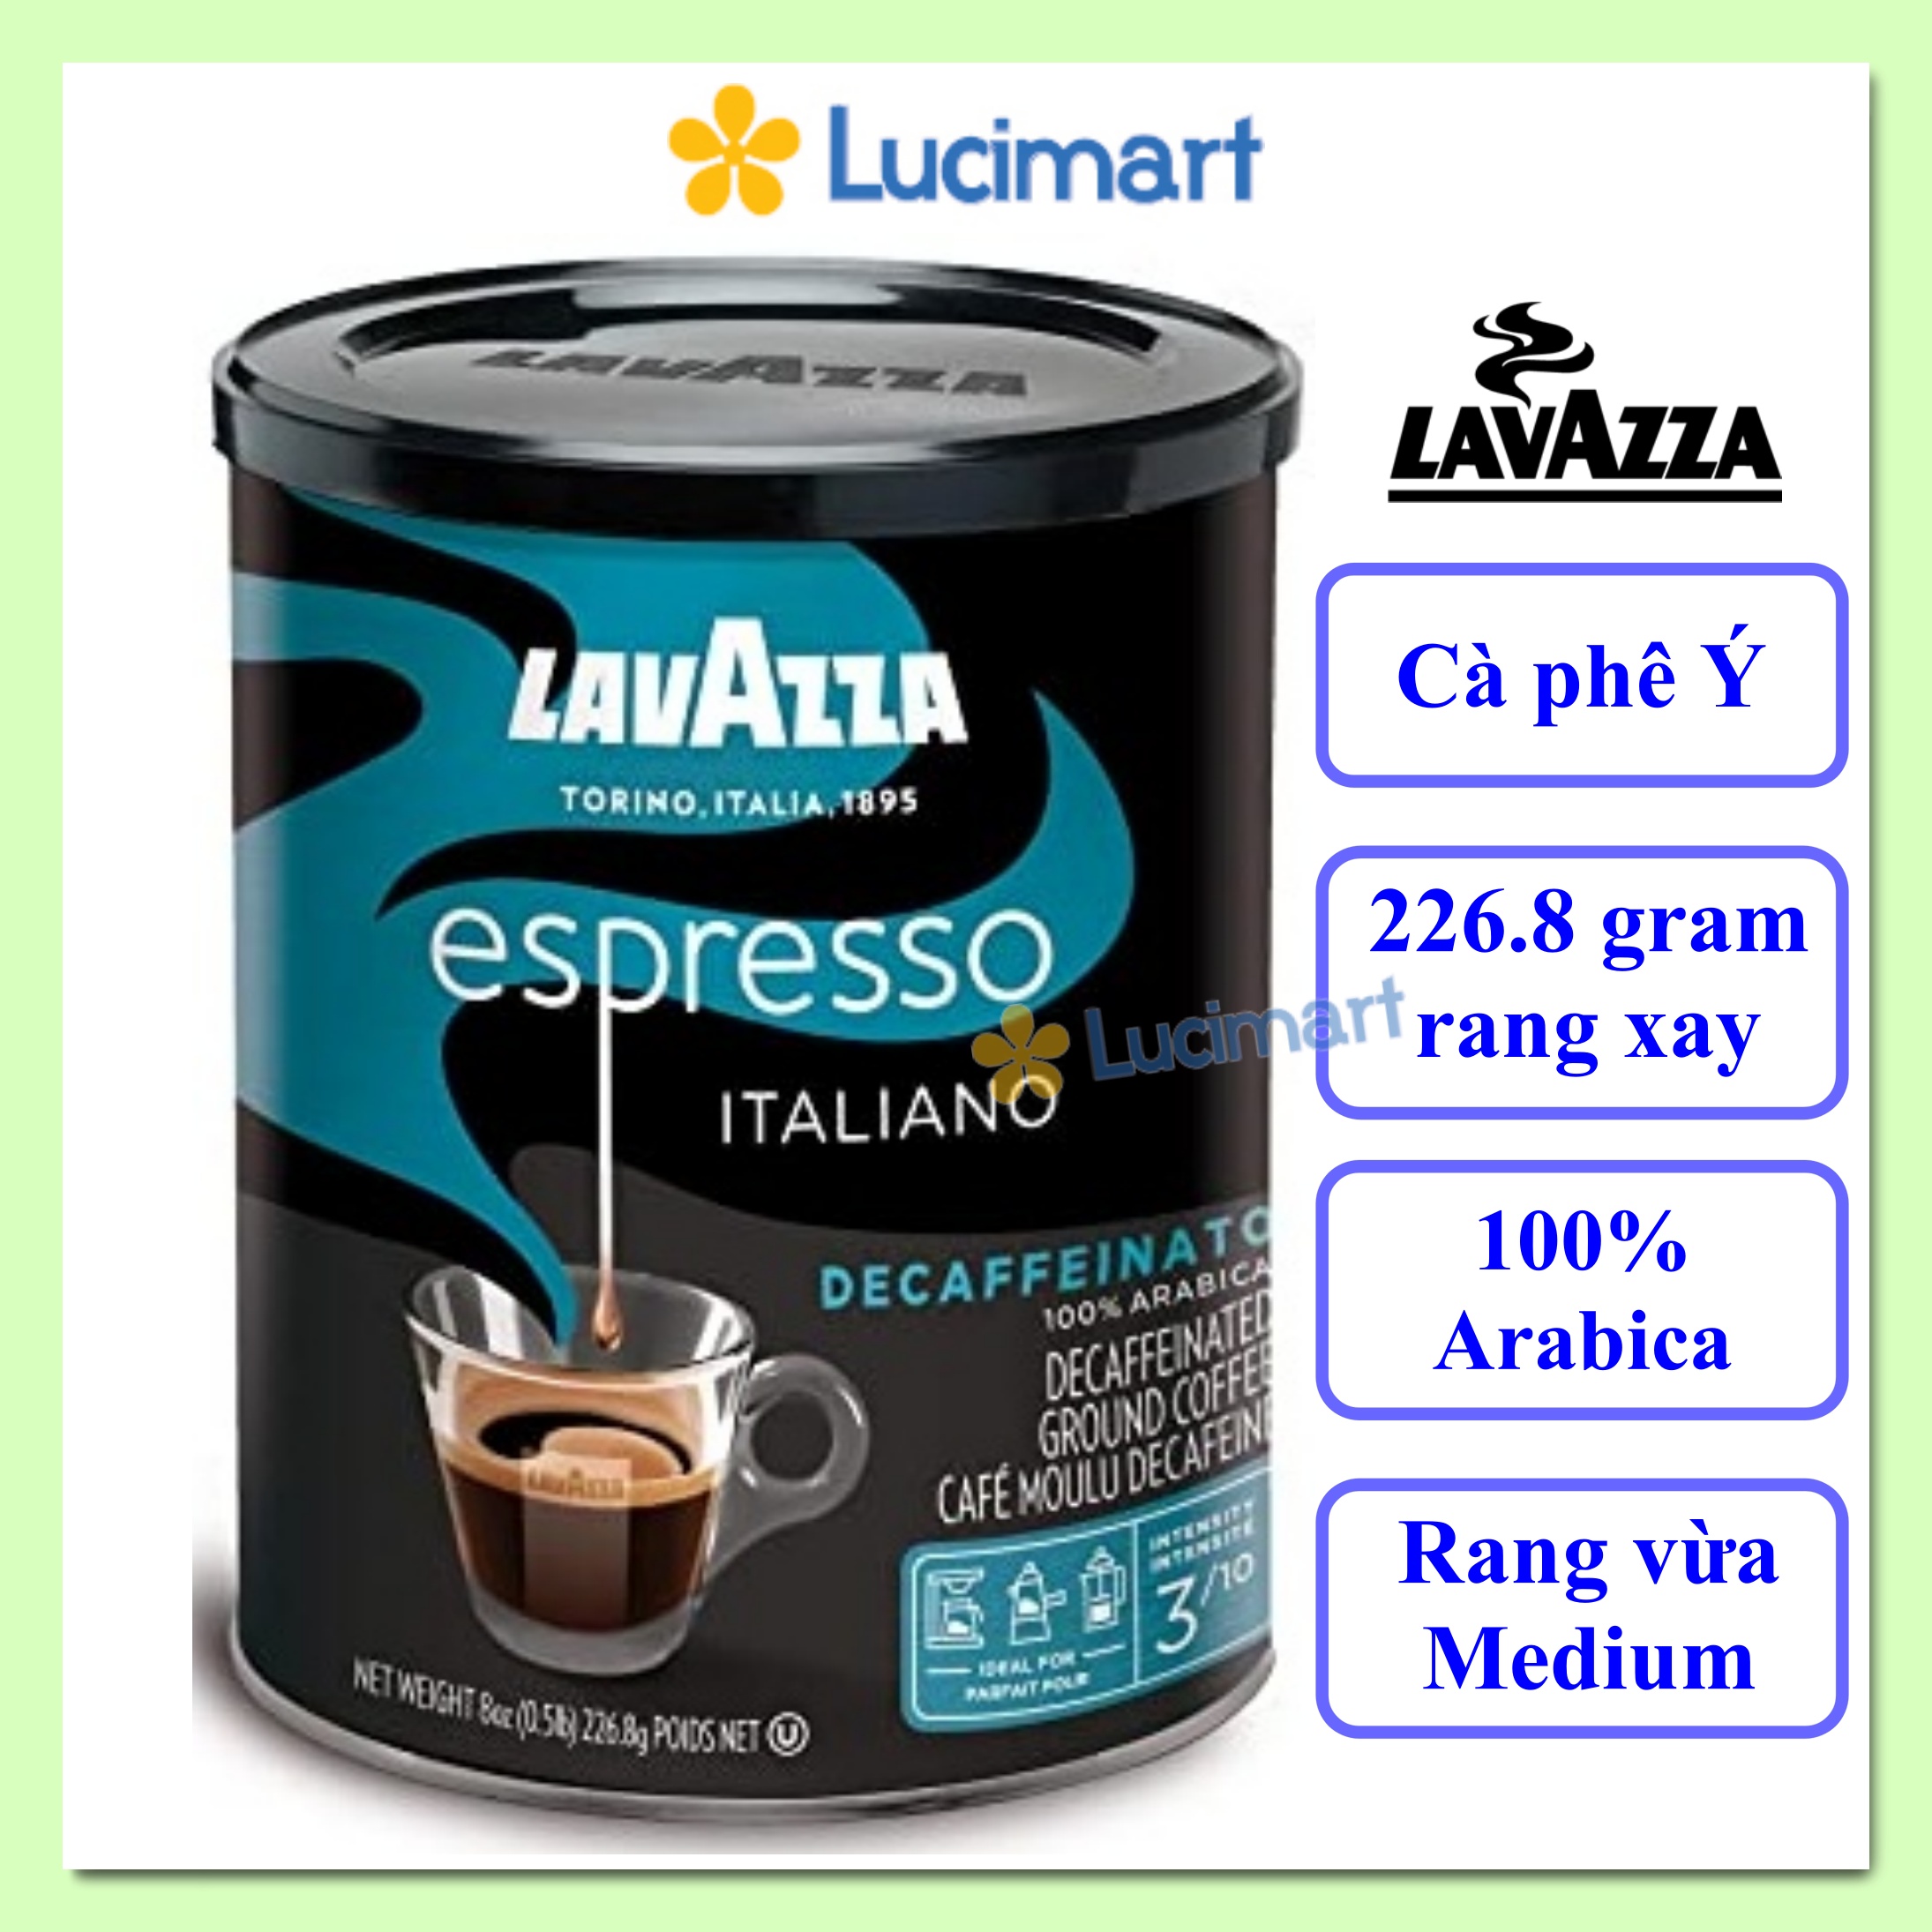 Cà phê Ý Lavazza rang xay sẵn Lavazza Espresso Decaffeinato Italiano